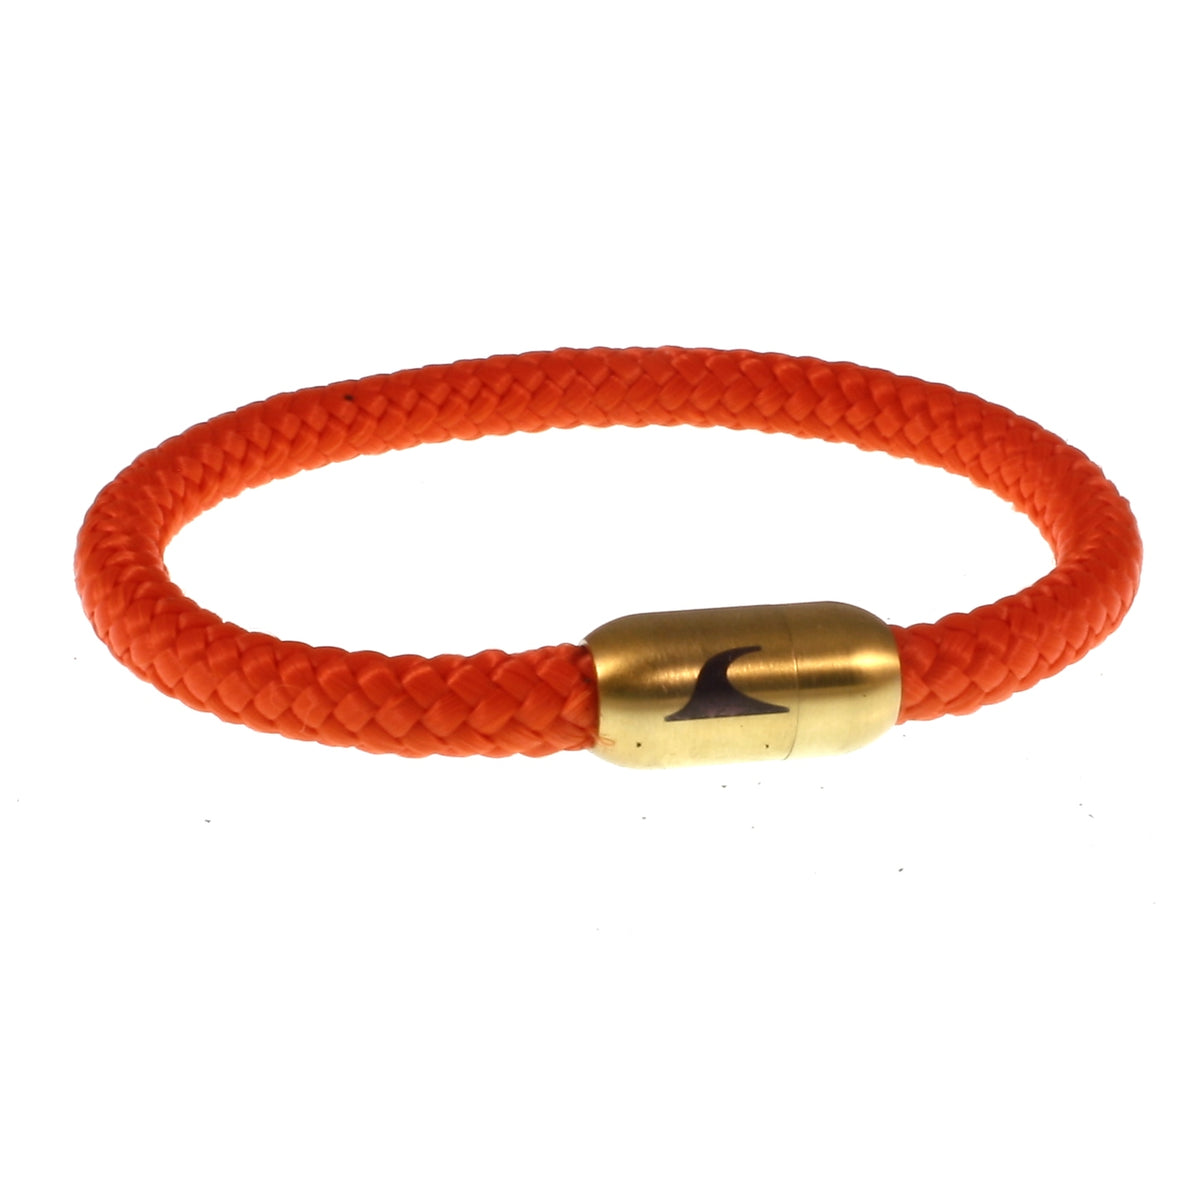 Herren-segeltau-armband-damen-sylt-orange-gold-geflochten-Edelstahlverschluss-vorn-wavepirate-shop-st